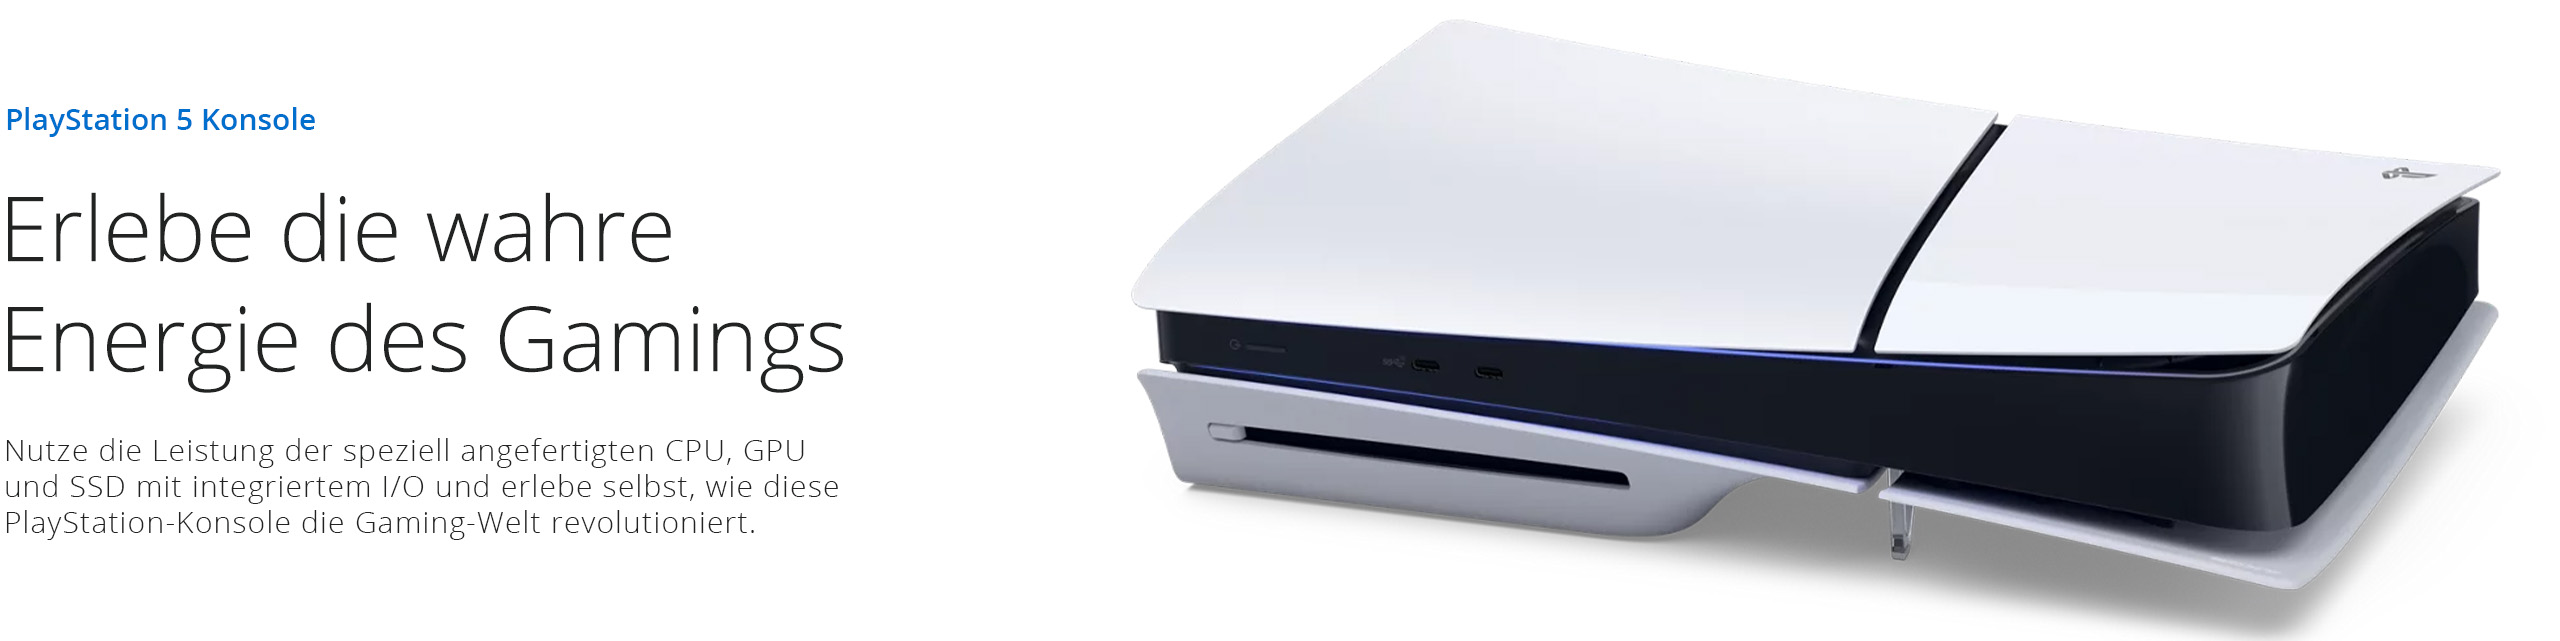 Alle Infos zur PlayStation 5 Konsole - Bei GameStop sichern